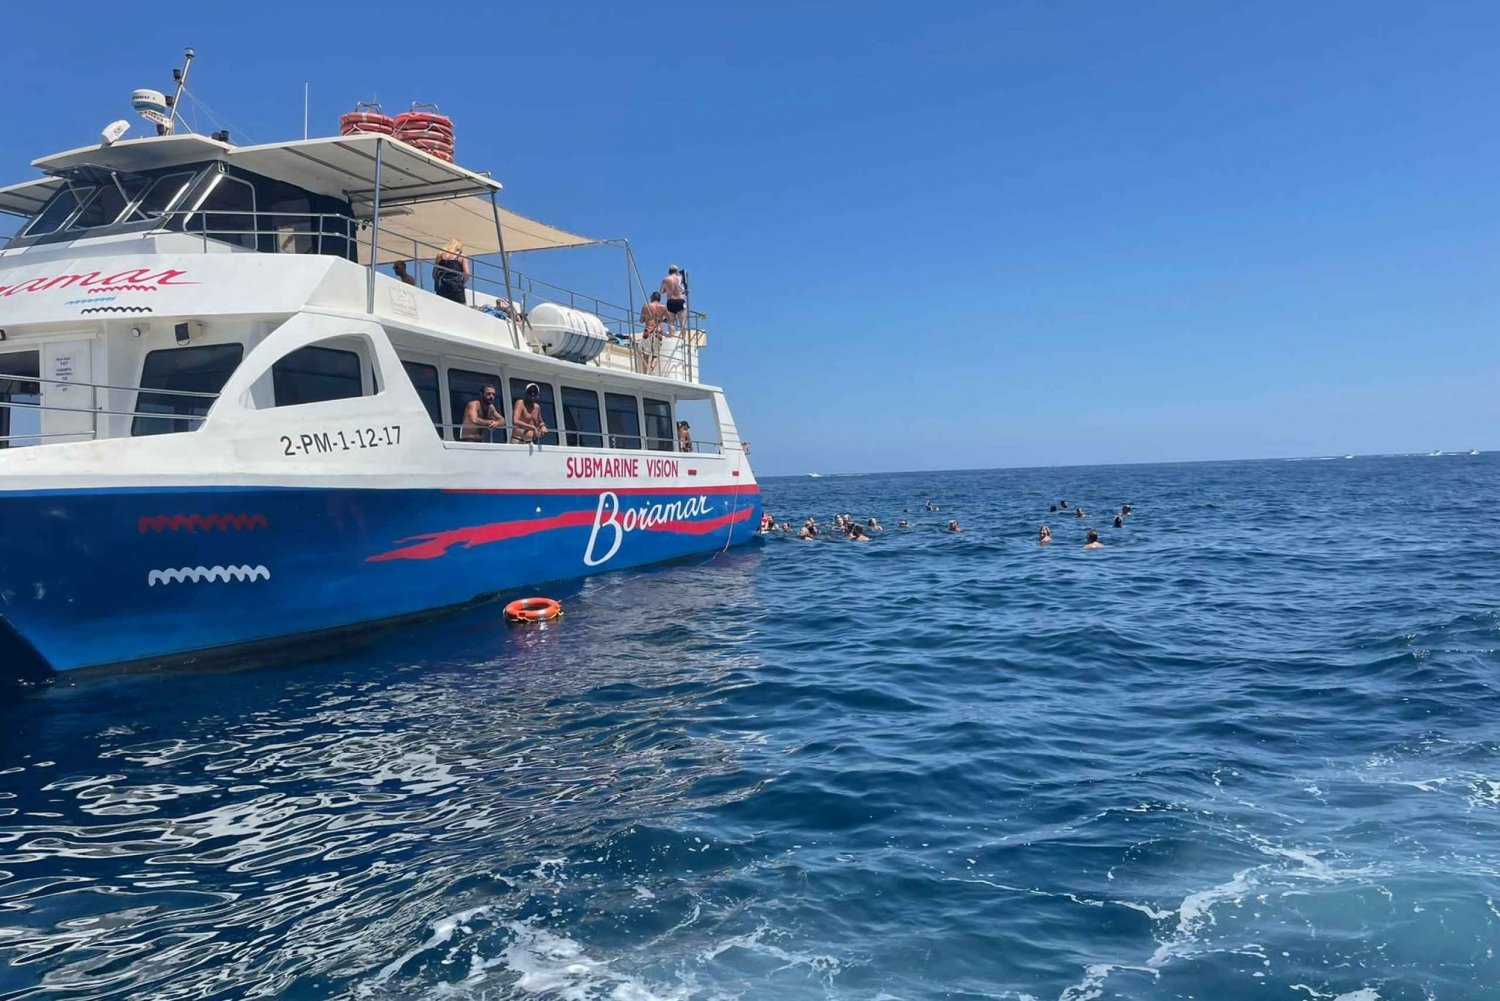 Javea : Excursion en catamaran à moteur sur l'île de Portitxol avec Paella